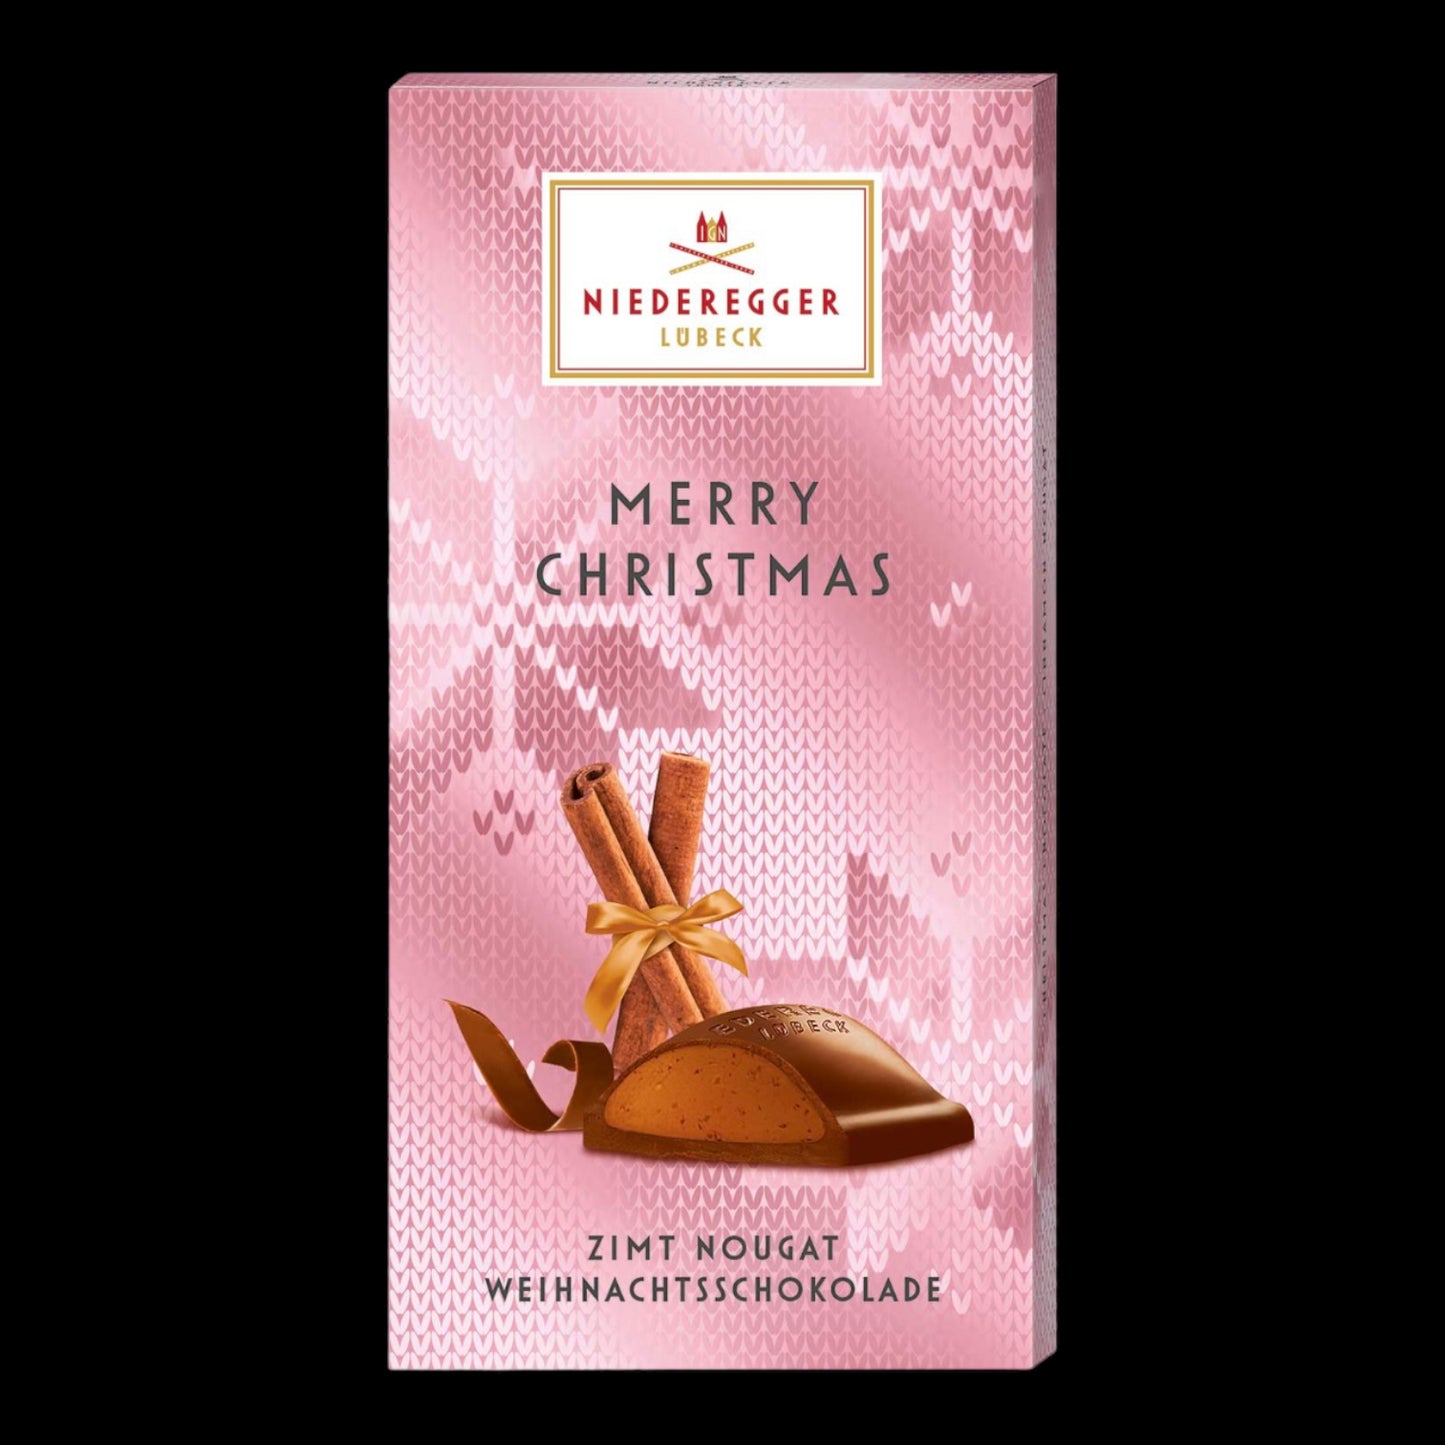 Niederegger Merry Christmas Weihnachtsschokolade Zimt Nougat 100g